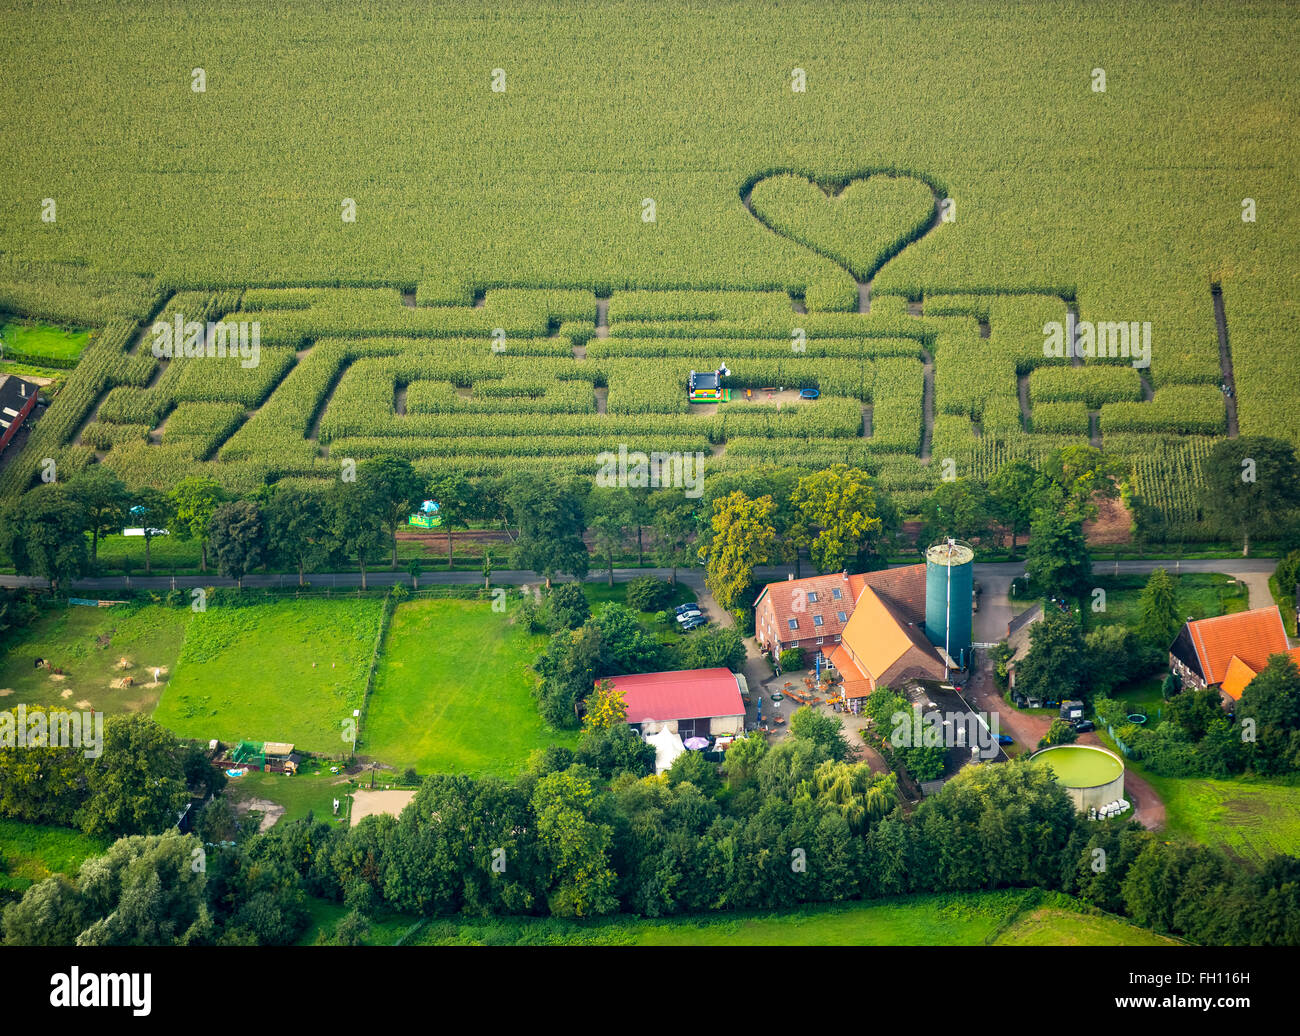 Labyrinthe avec un coeur dans le labyrinthe de maïs, maïs, forme de coeur, en forme de cœur, Herten, Ruhr, Rhénanie du Nord-Westphalie Banque D'Images